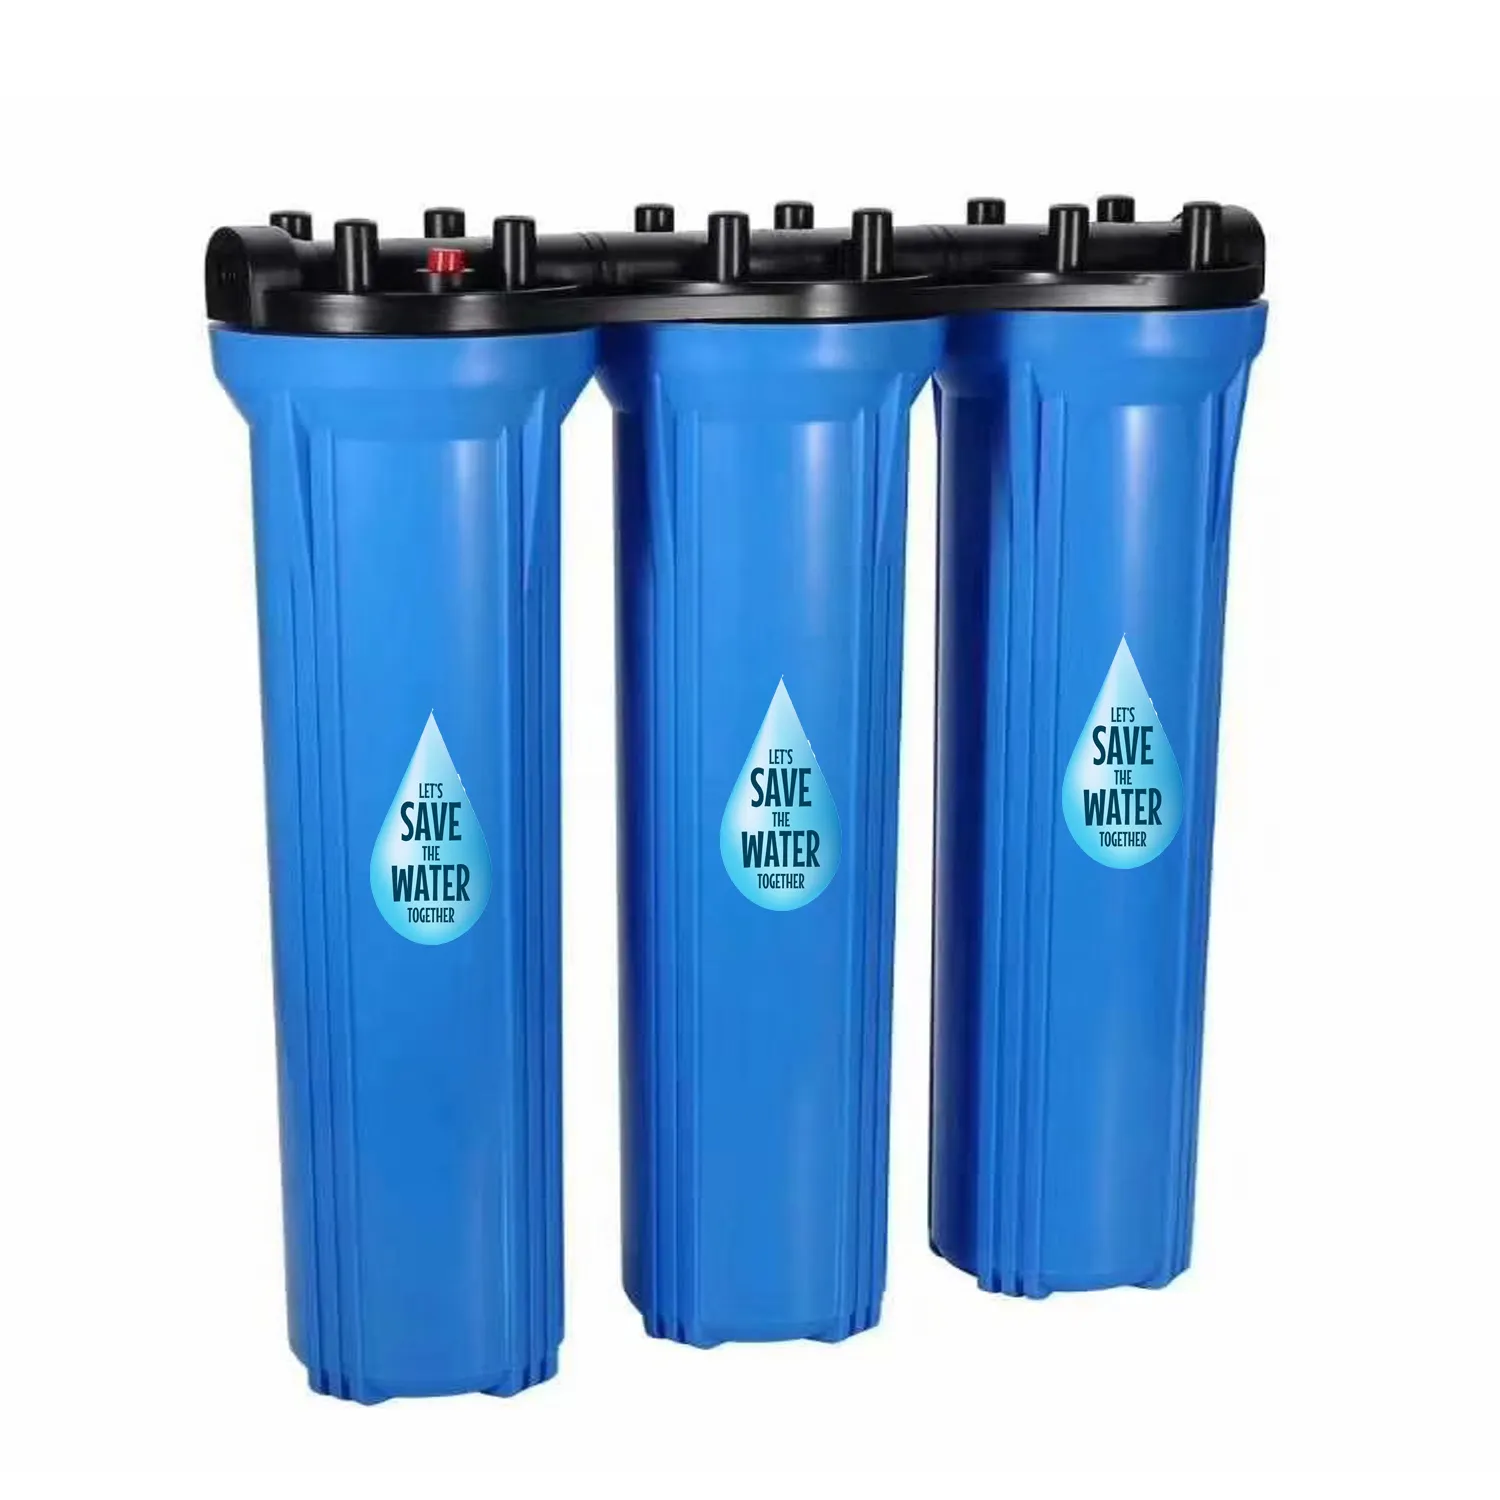 Bester 20 "x 4,5" Wasserfilter dreifach 20 Zoll x 4,5 Zoll 3-stufig für die Wasser reinigung im Freien oder in der Industrie